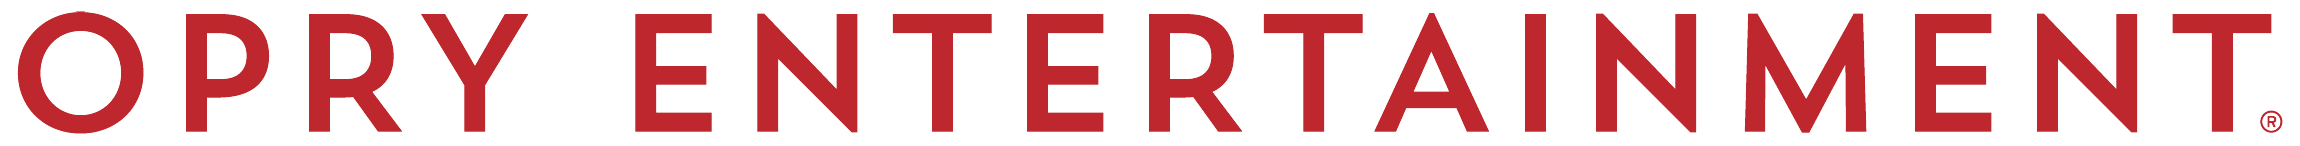 OEG_Logo_Red